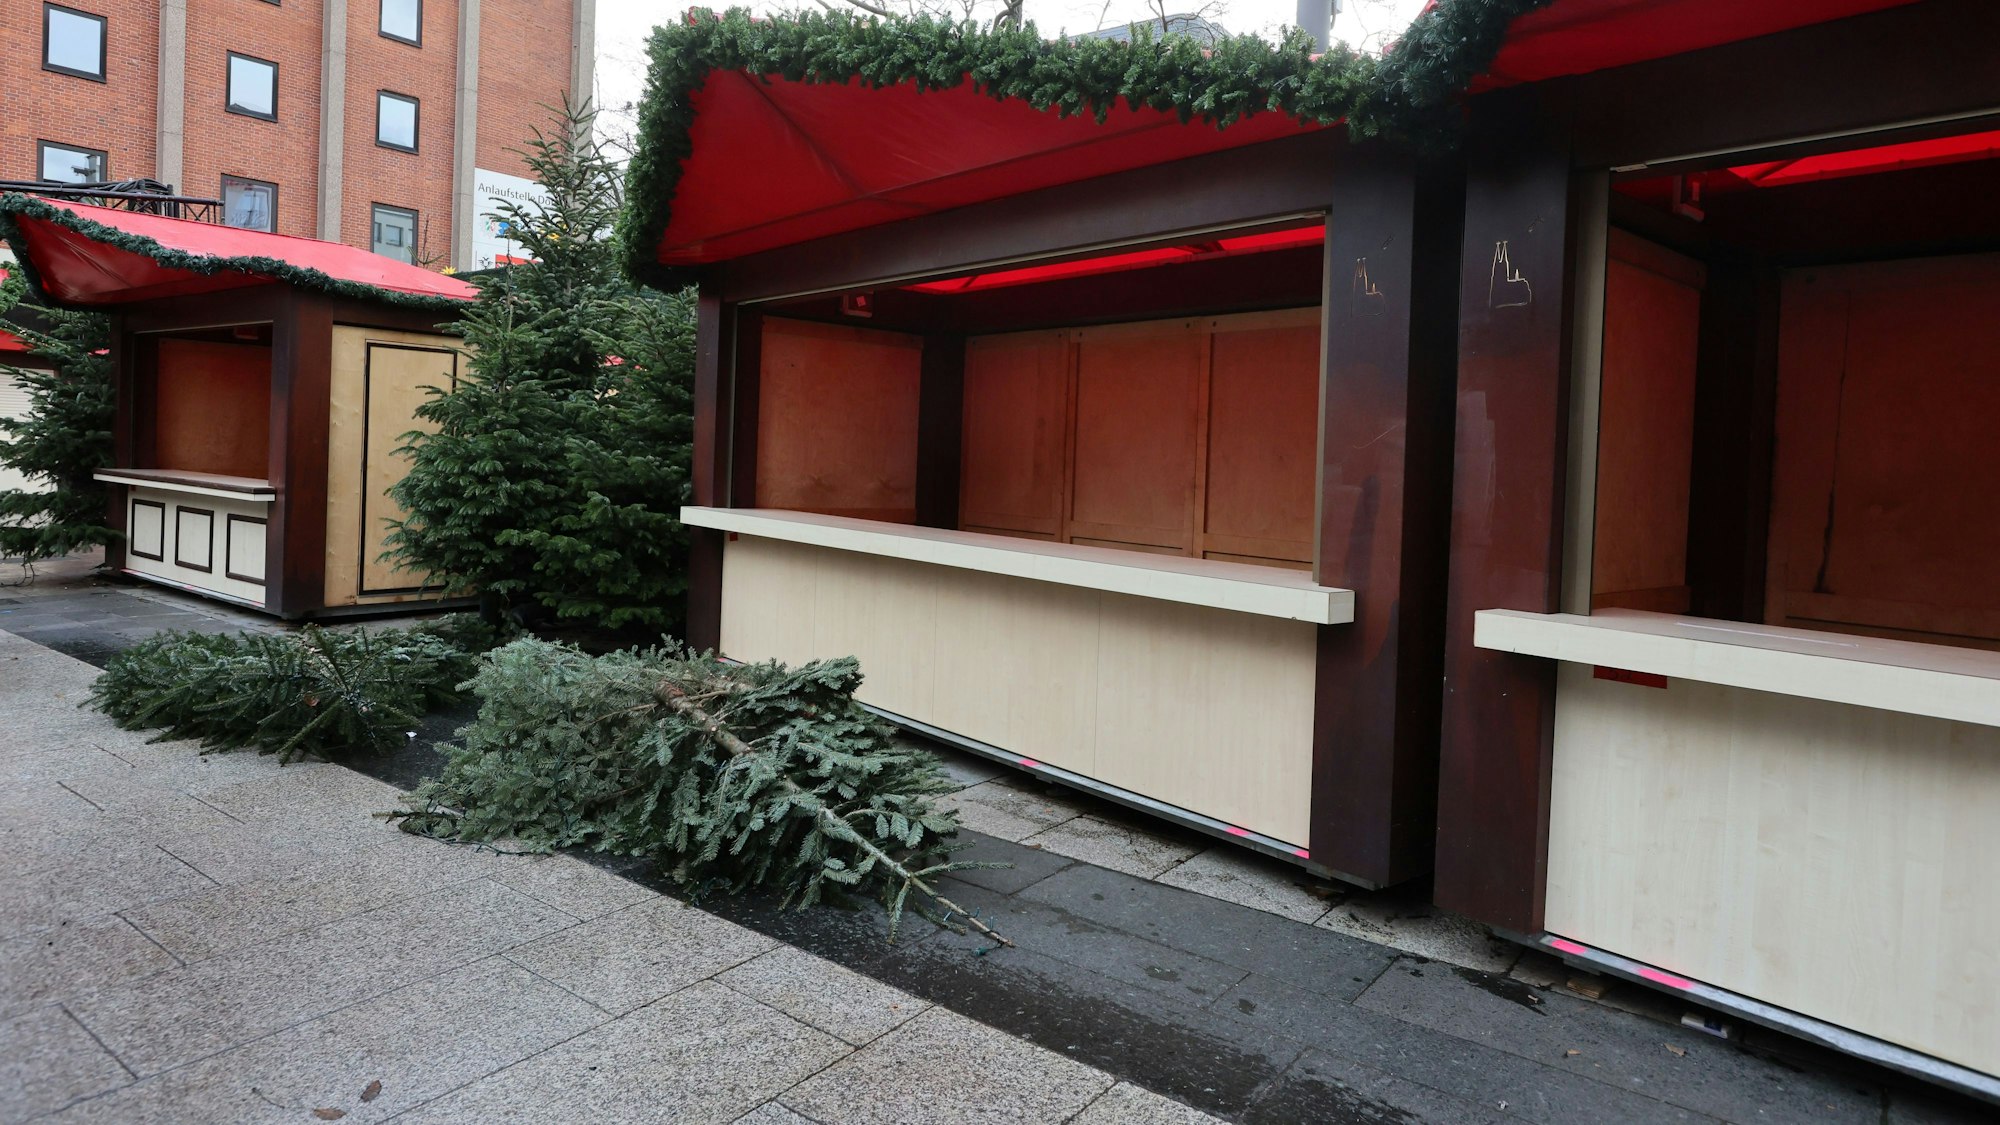 Weihnachtsbäume, die als Dekoration dienten, liegen auf dem Roncalliplatz vor den leer geräumten Hütten.

